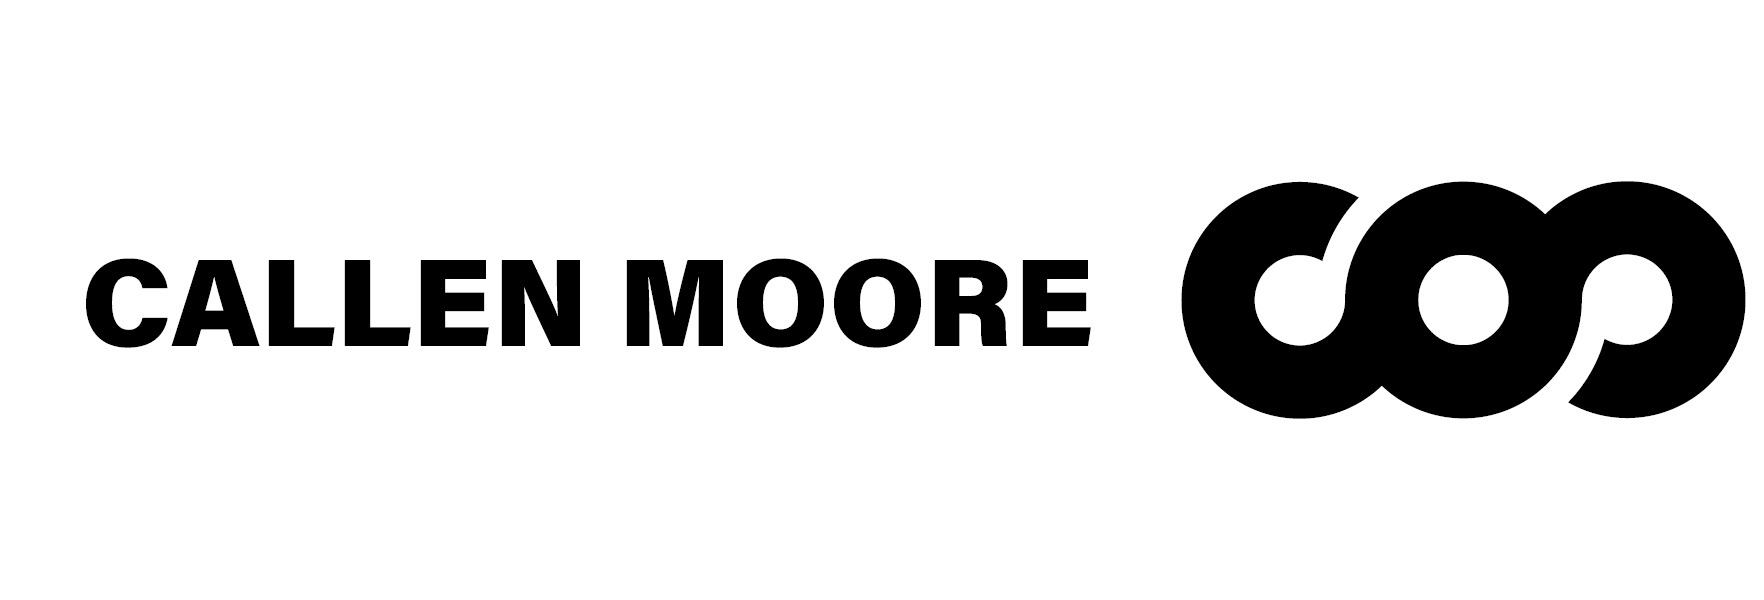 Callen Moore